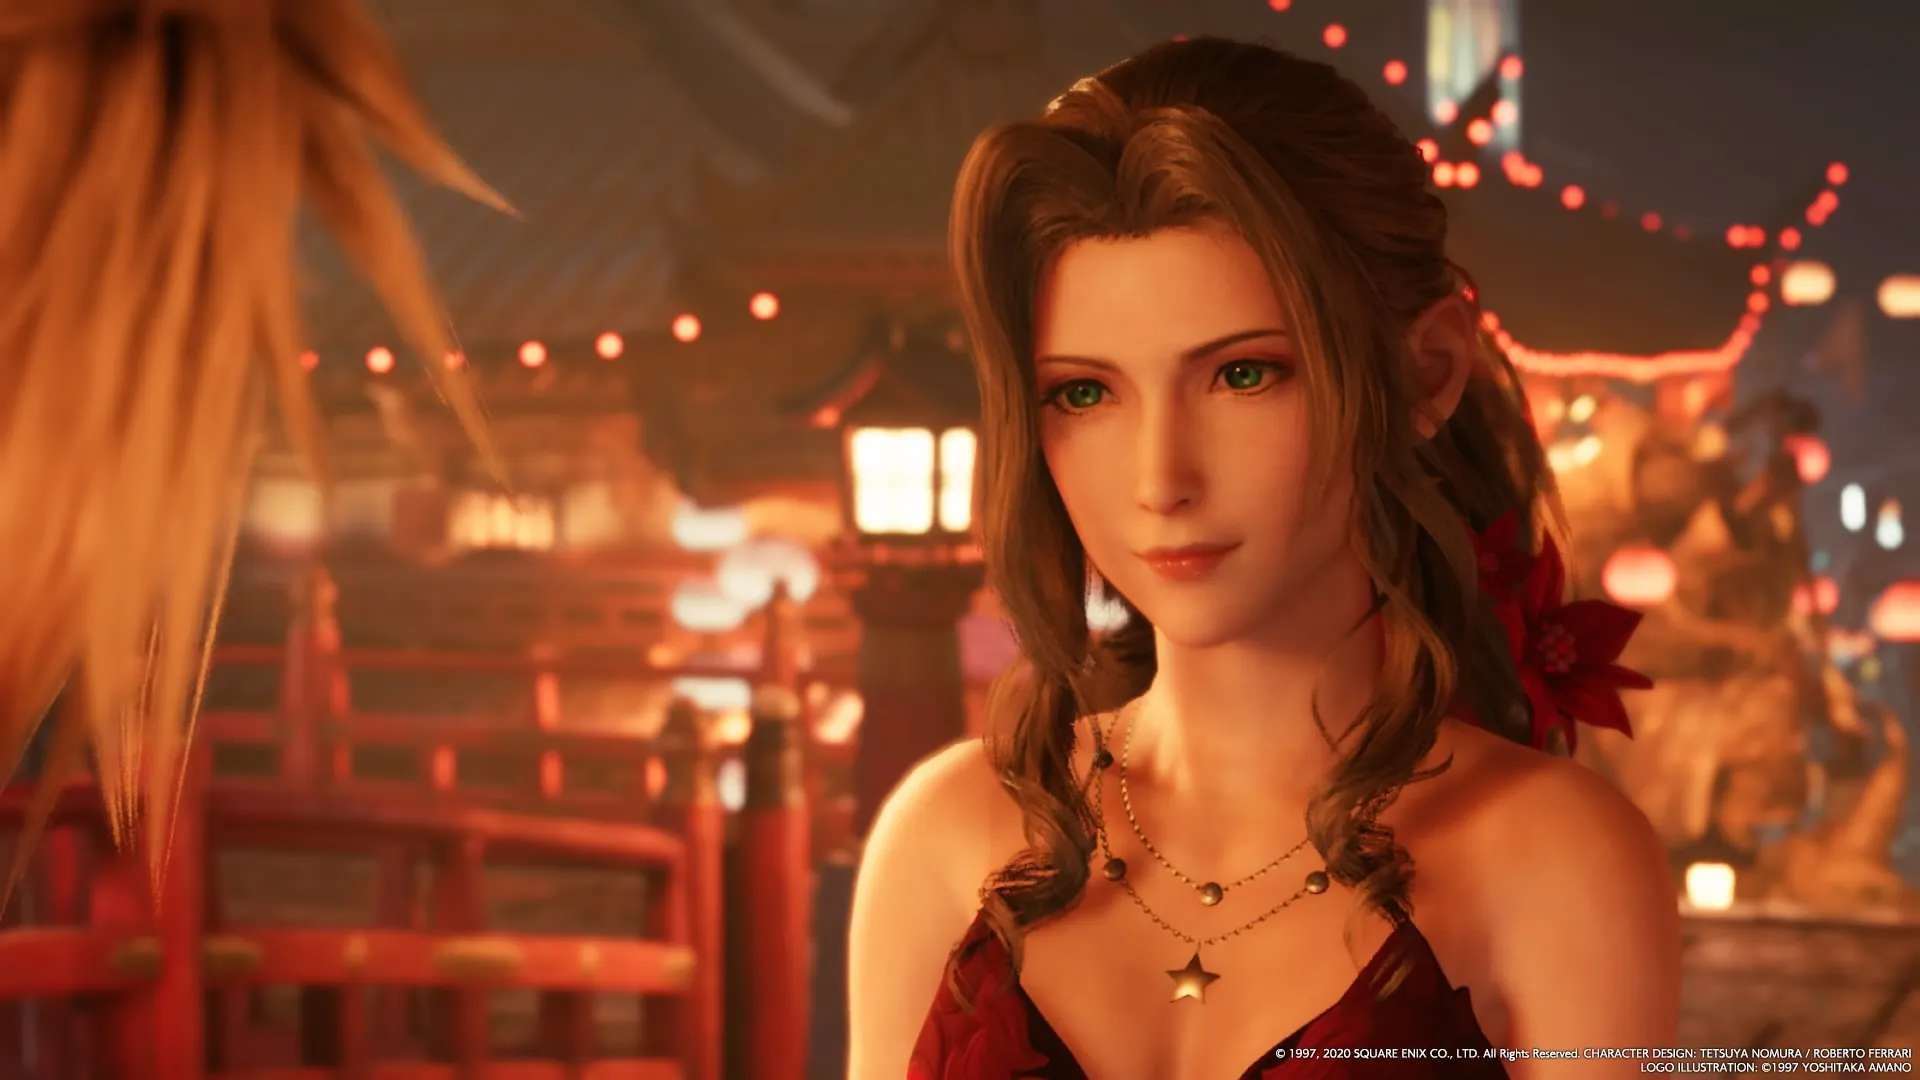 Final Fantasy VII Remake (Video Game 2020) - Awards - IMDb